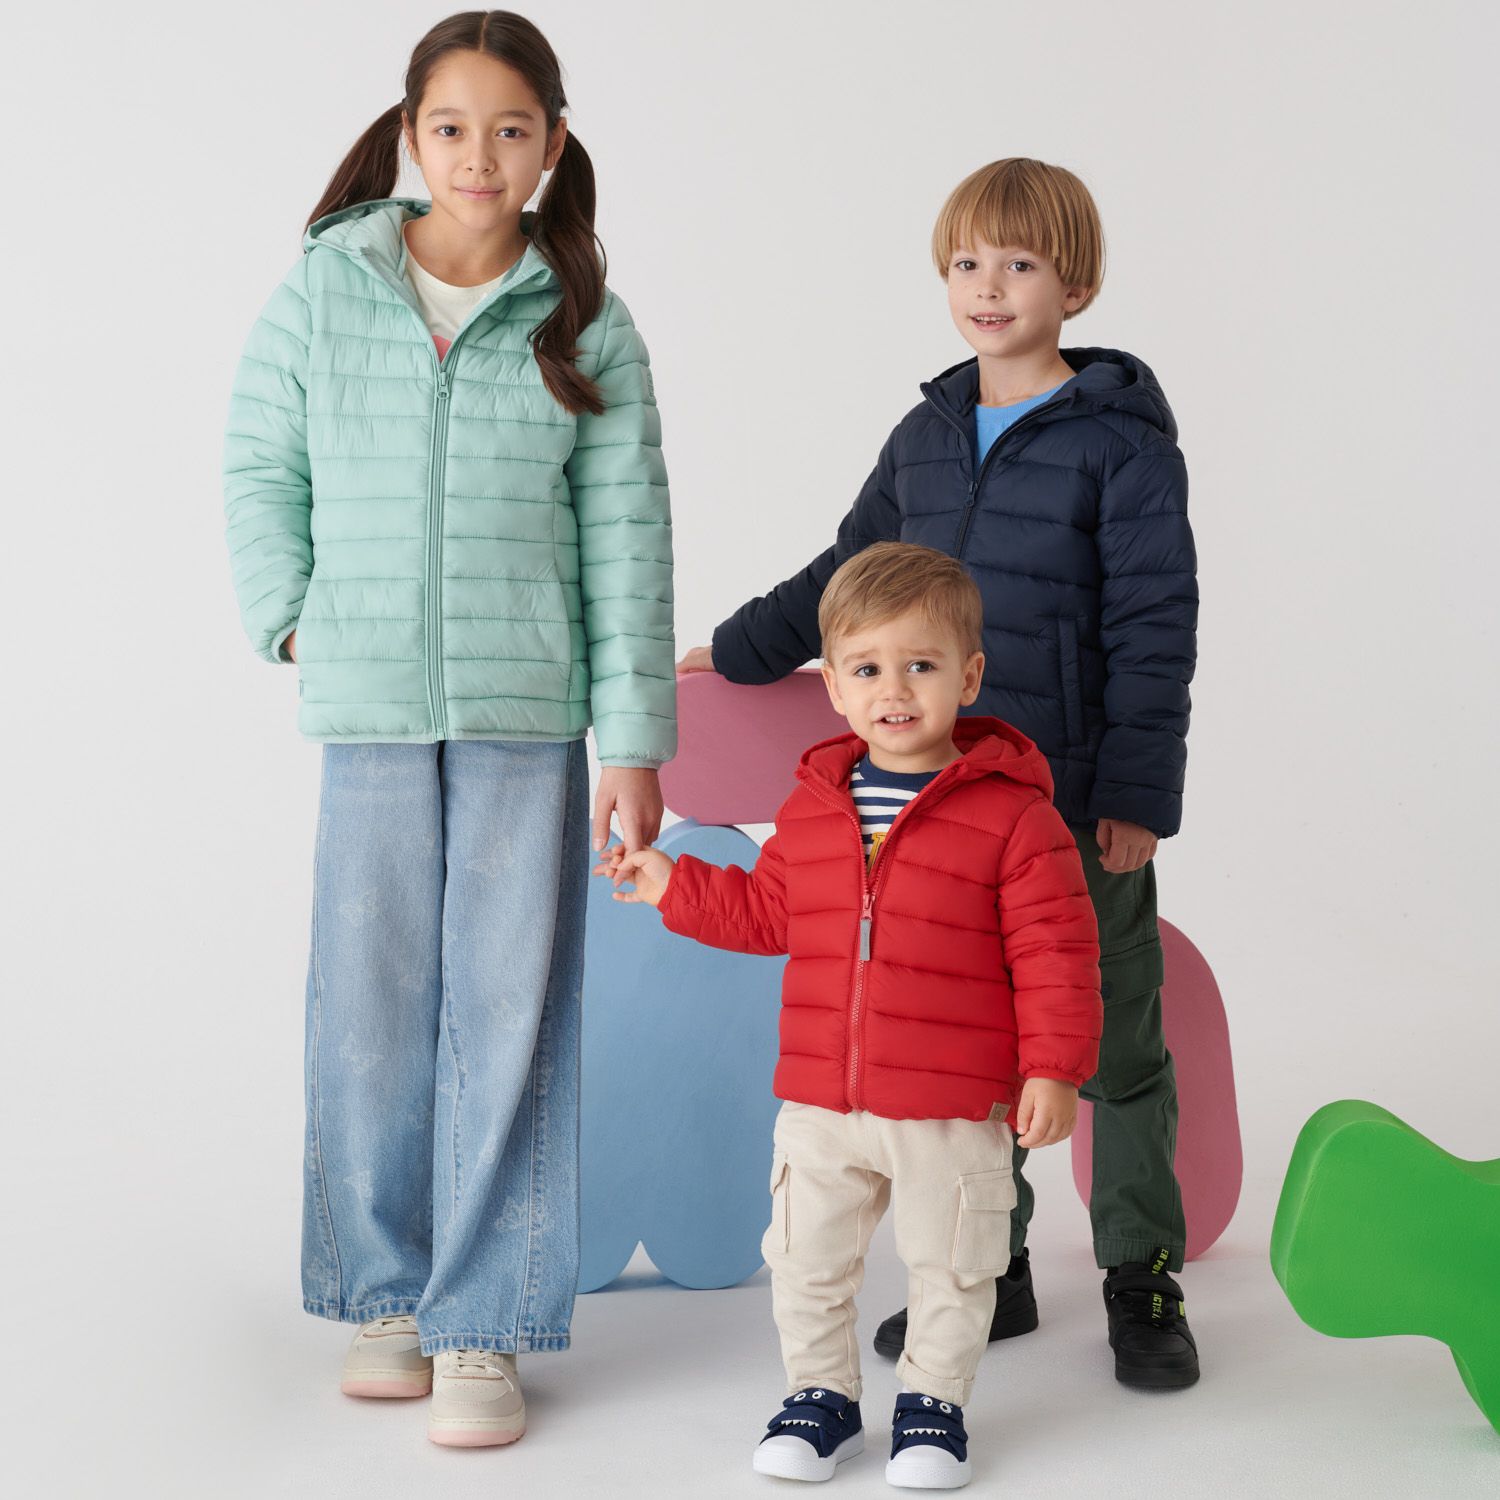 Przegląd wiosennych kurtek dla dzieci marki Cool Club: styl, komfort i funkcjonalność!